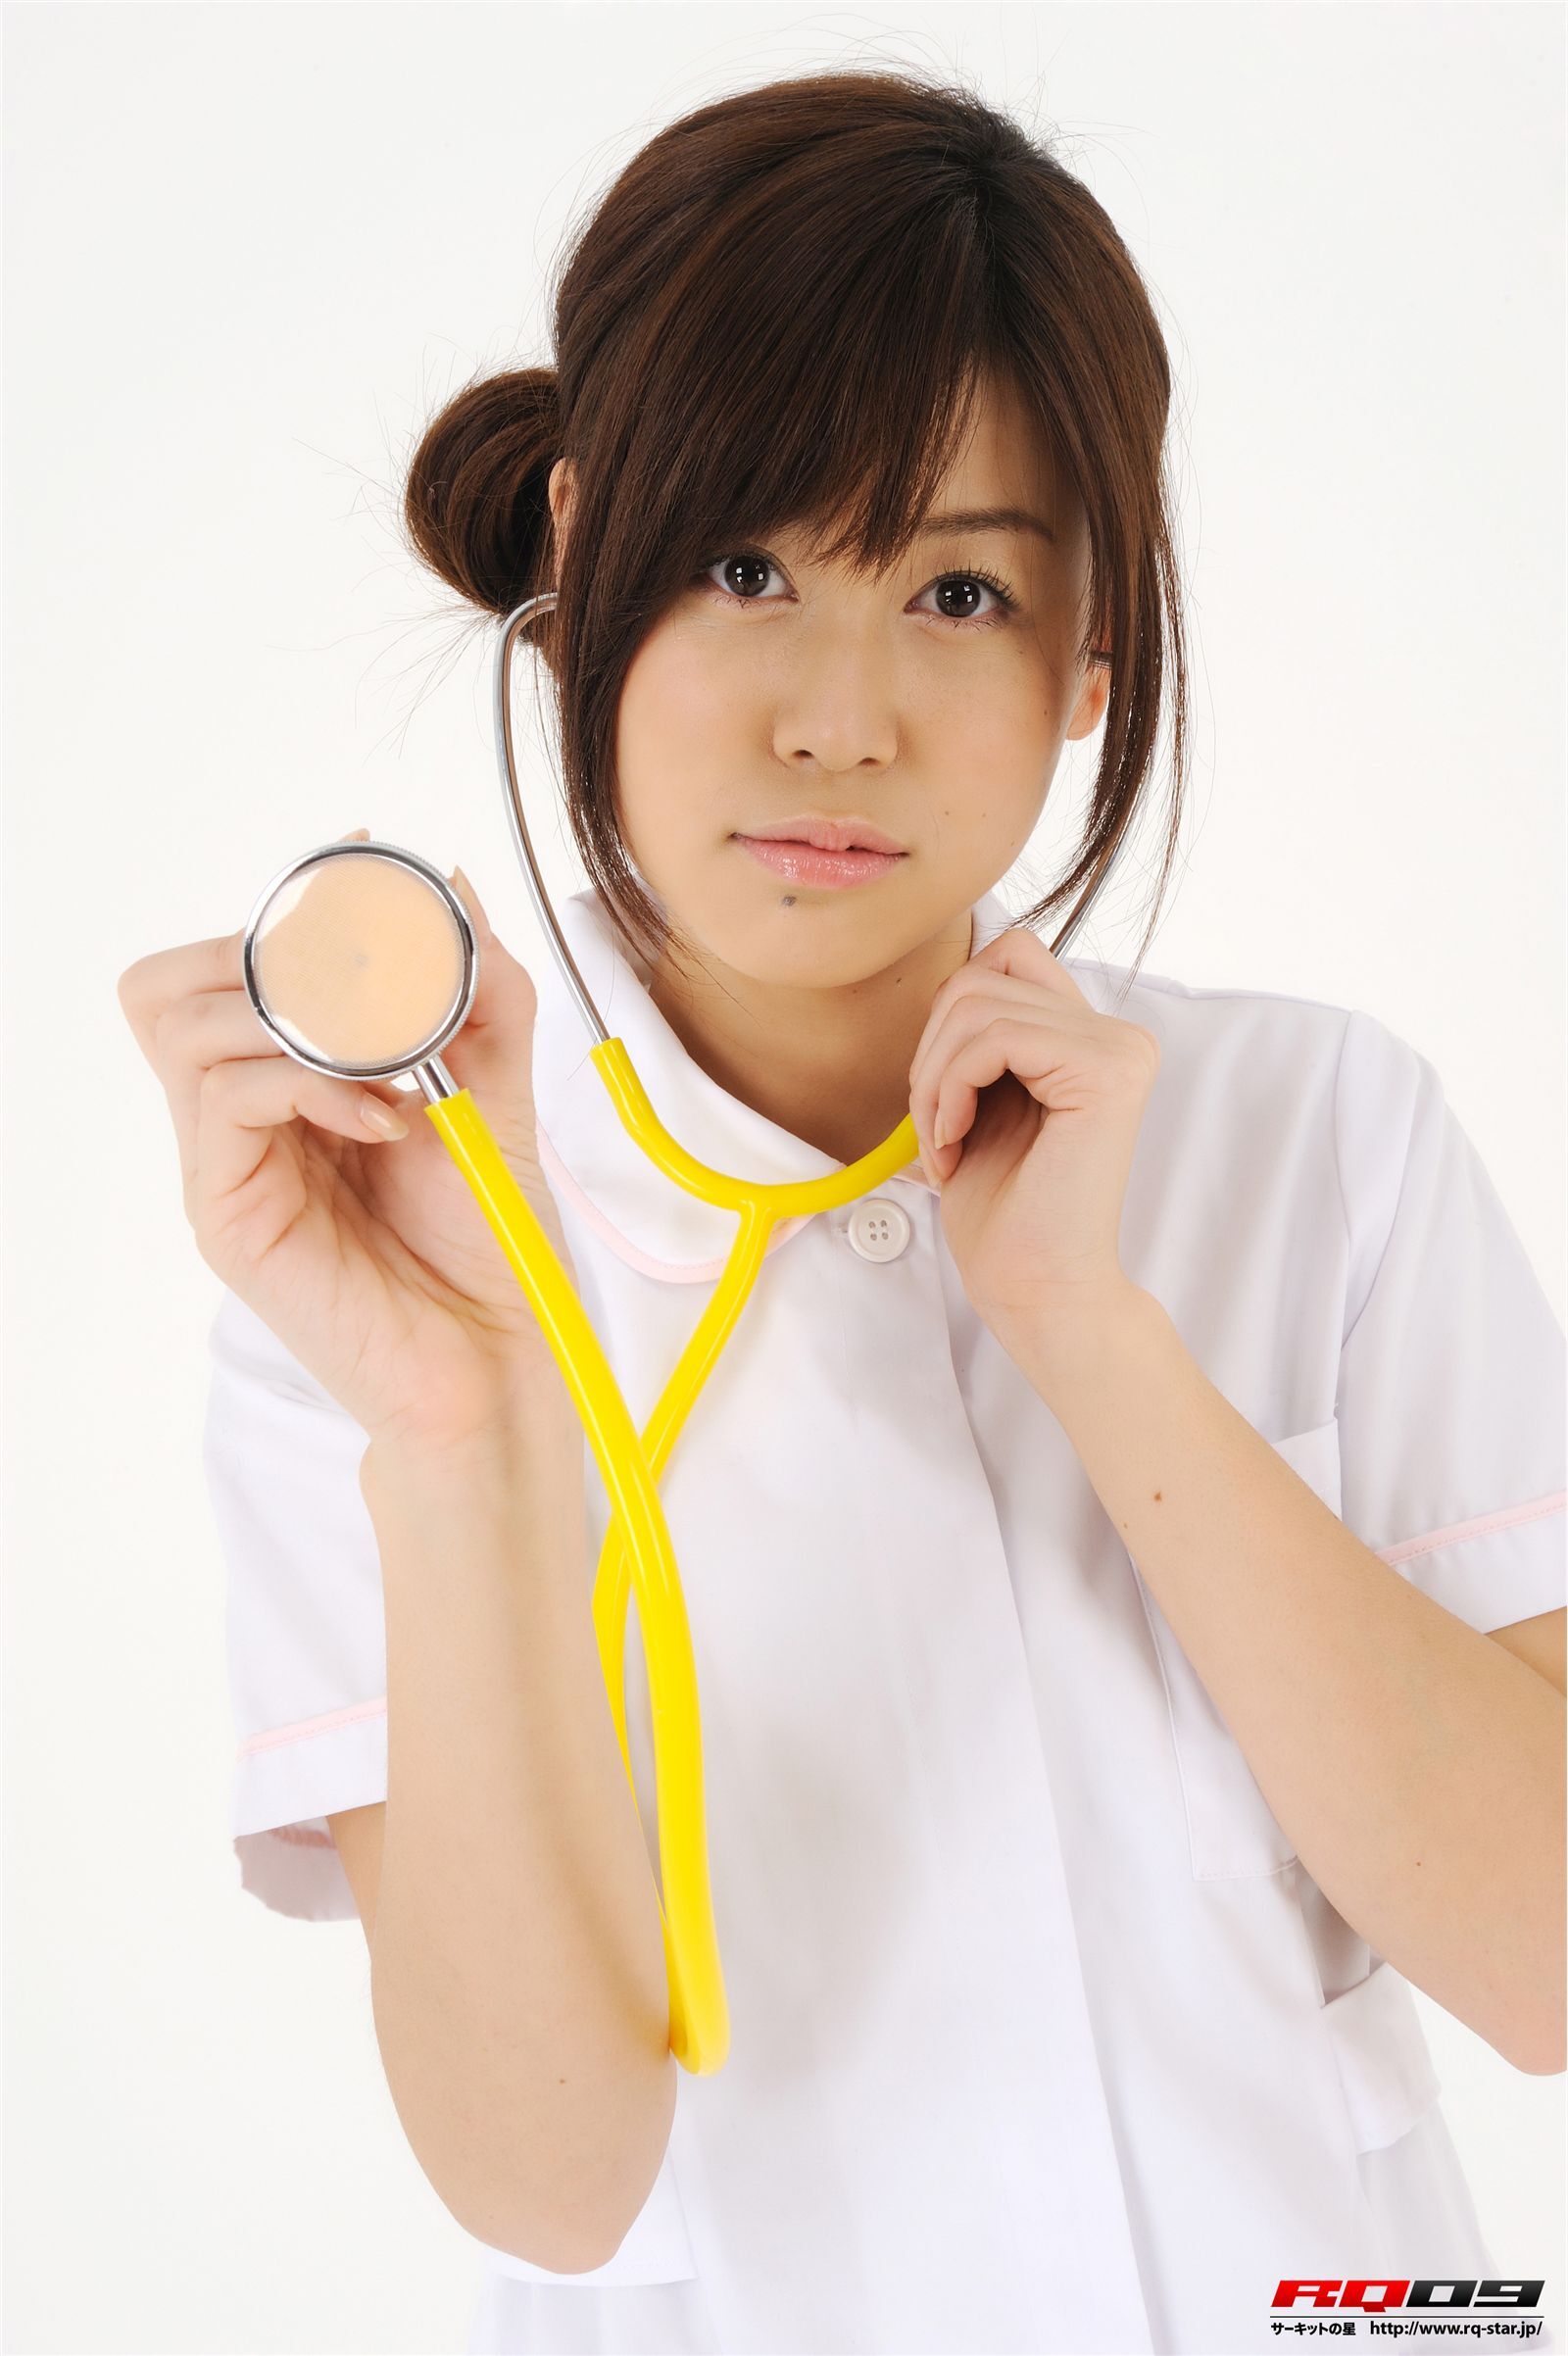 [RQ-STAR]2016.01.08 NO.01125 Airi Nagasaku 永作あいり Nurse Costume